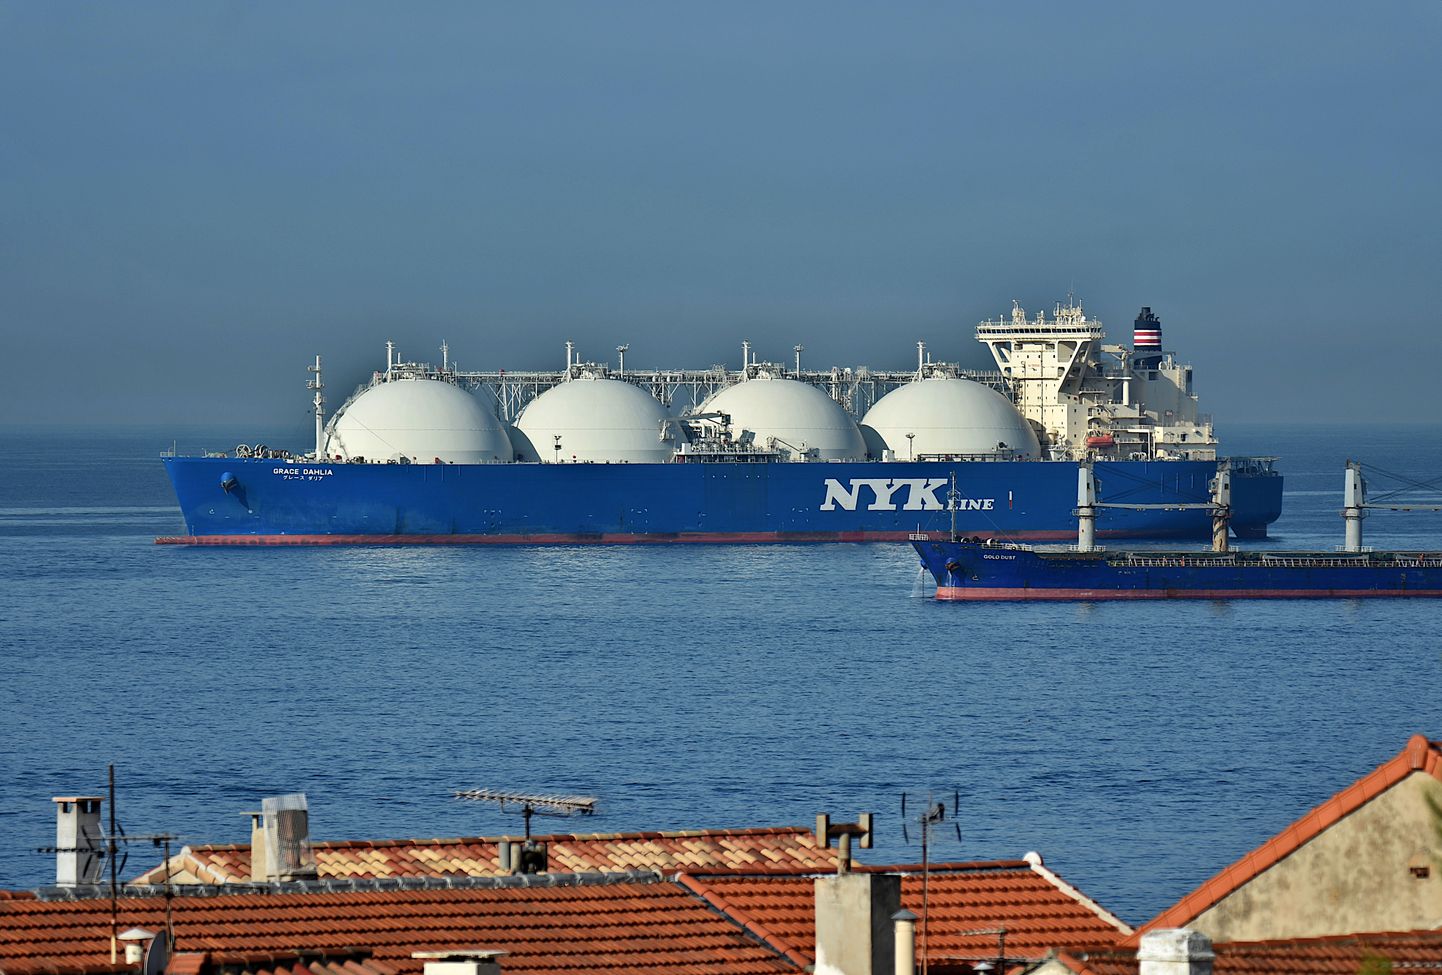 LNG tanker. Pilt on illustratiivne